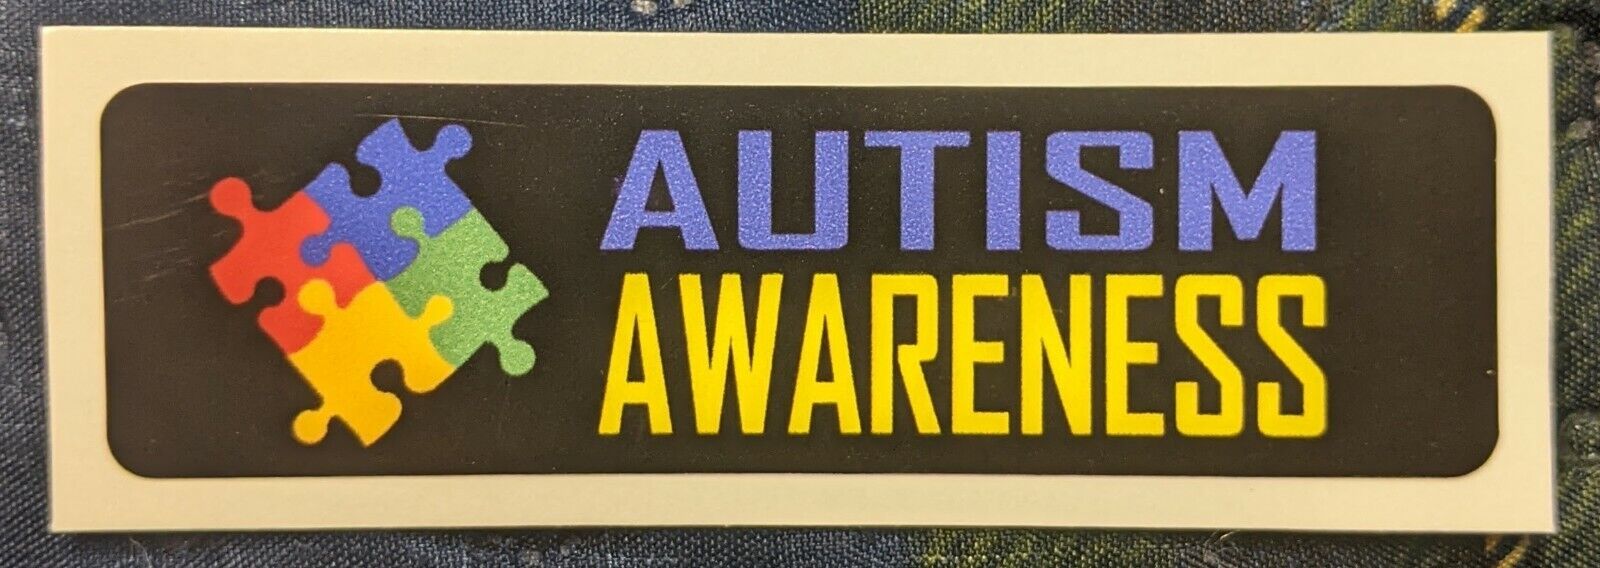 Autism Awareness Autism Motorcycle Helmet Sticker Biker Helmet Decal